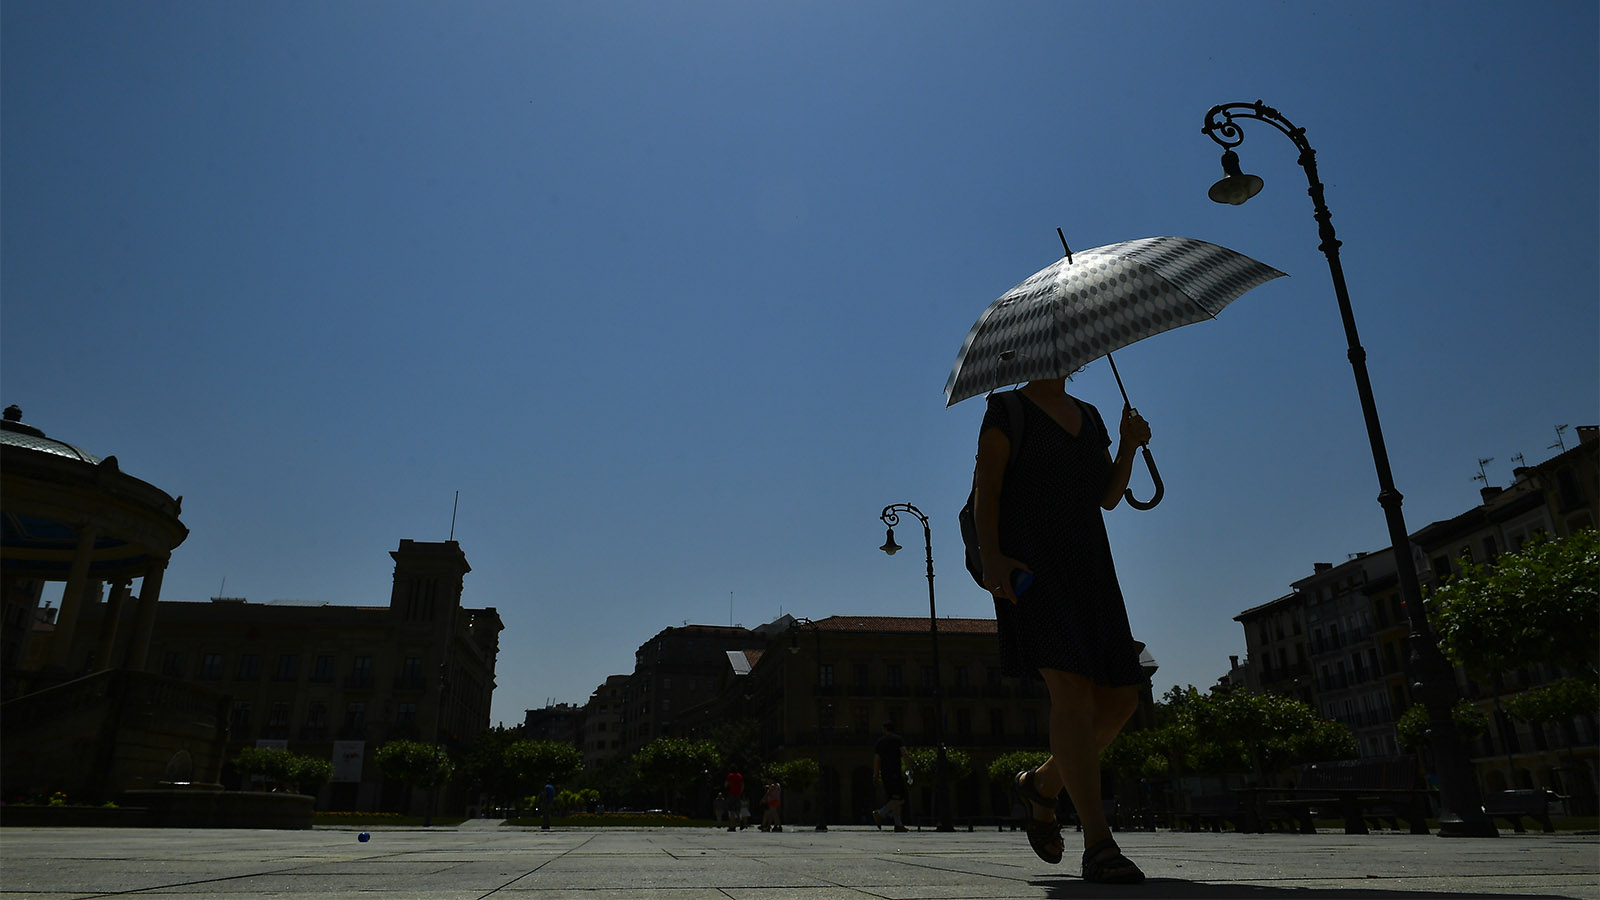 אישה מתגוננת בפניה השמש בספרד במהלך גל חום קיצוני באירופה (AP Photo/Alvaro Barrientos)